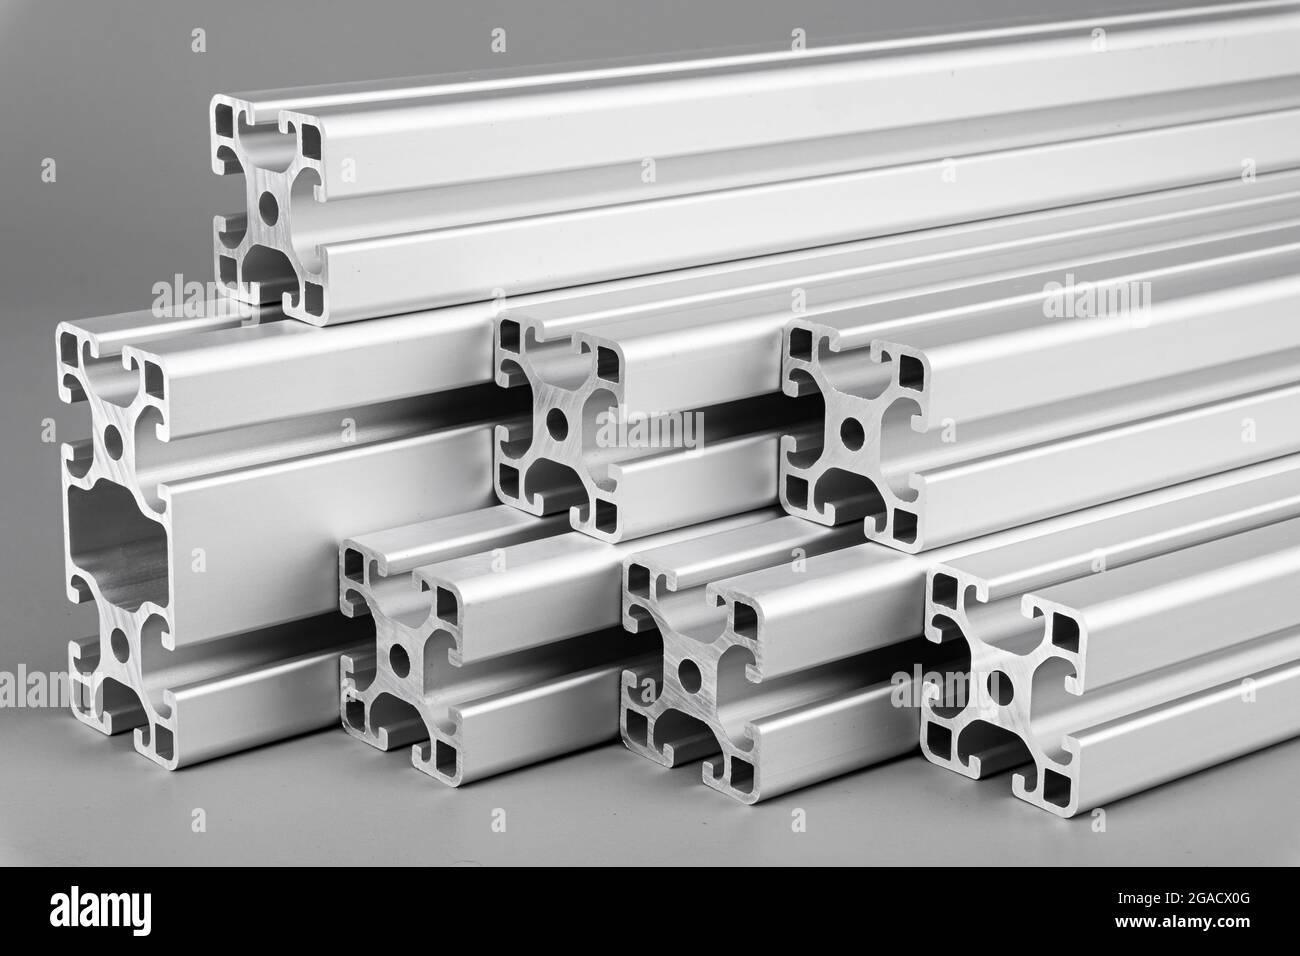 Barre di profilo estrusivo in alluminio su sfondo grigio. Progettazione e progettazione di materiali per l'industria delle costruzioni metalliche. Foto Stock